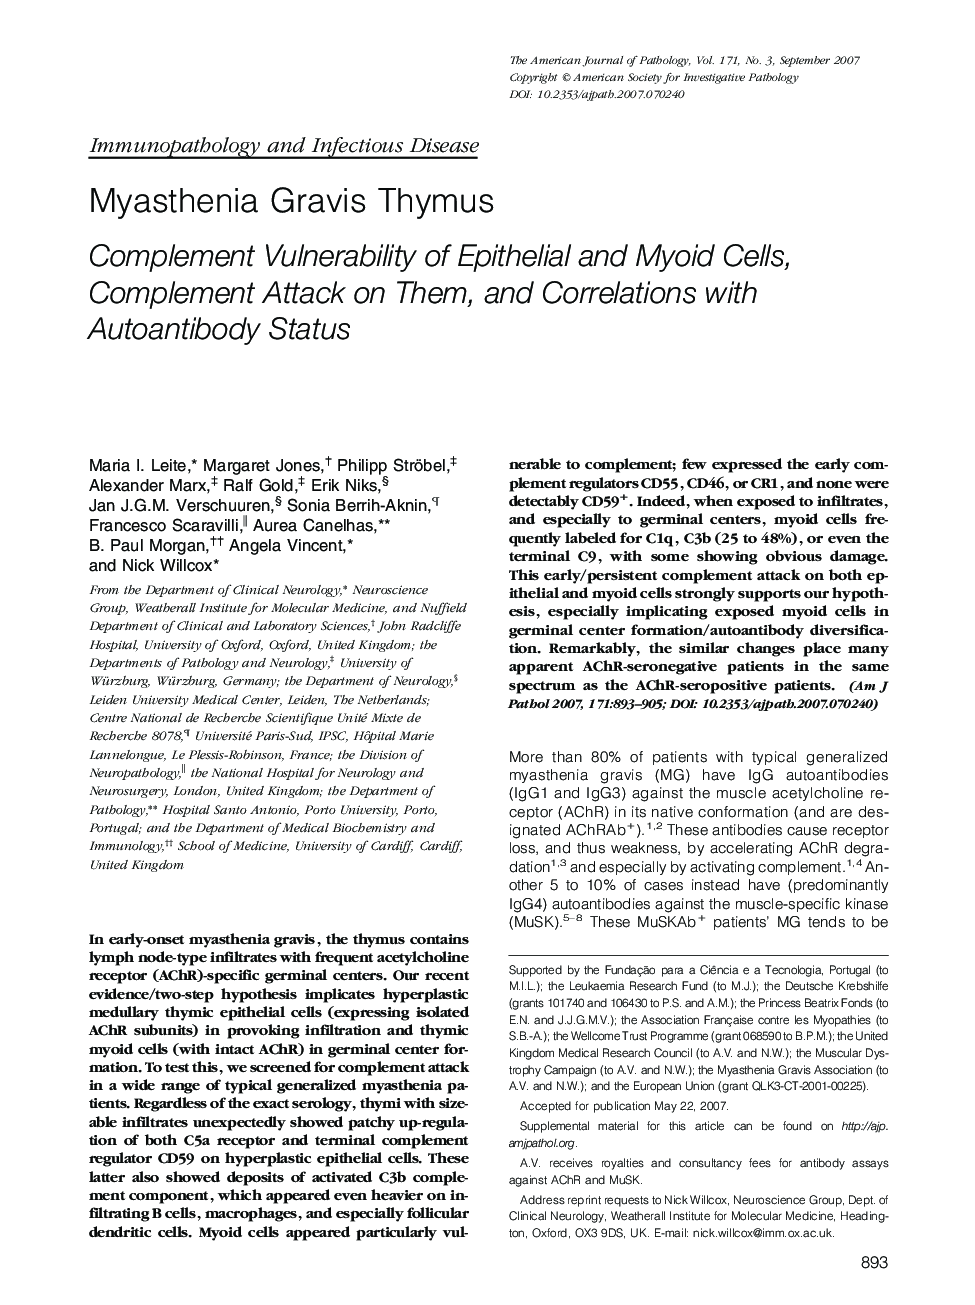 Myasthenia Gravis Thymus